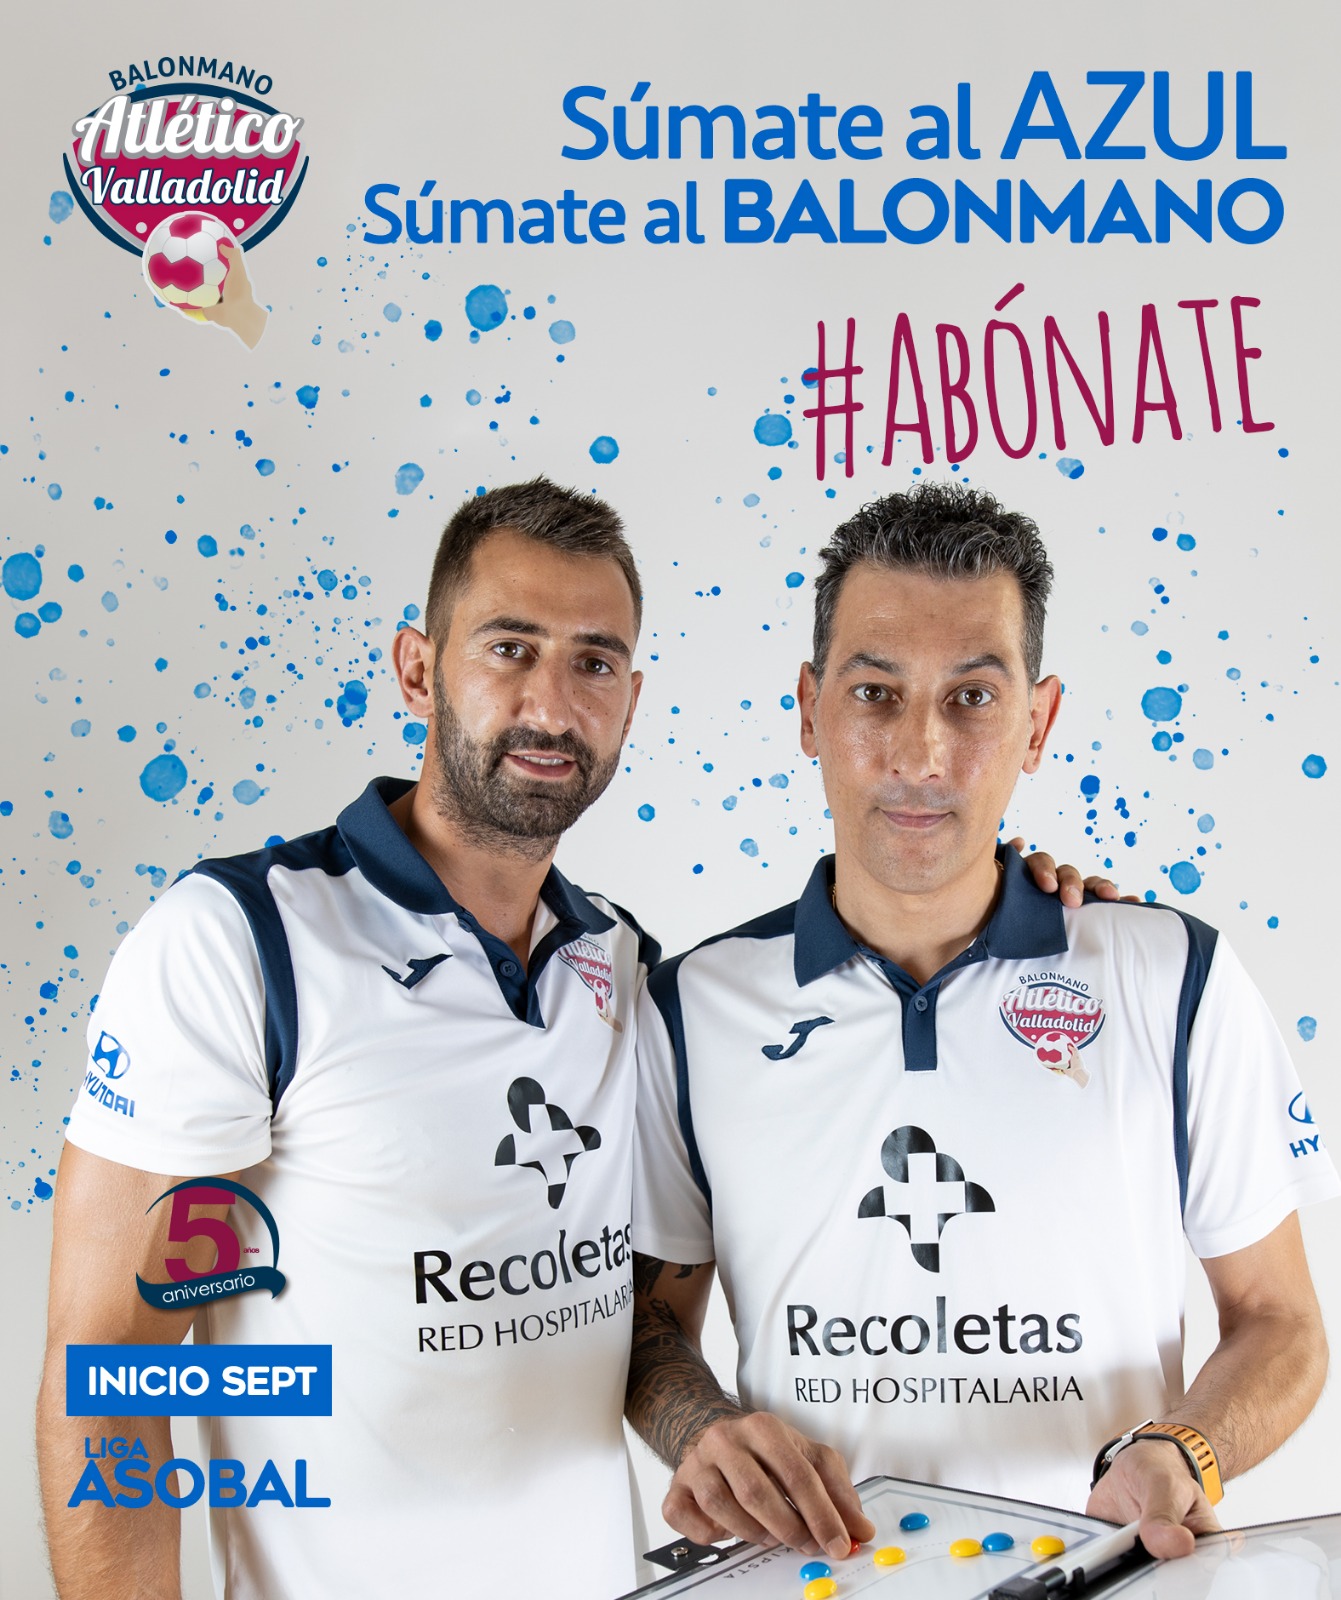 ¡Súmate al azul’, súmate al balonmano con el Recoletas Atlético Valladolid | Galería 17 / 28